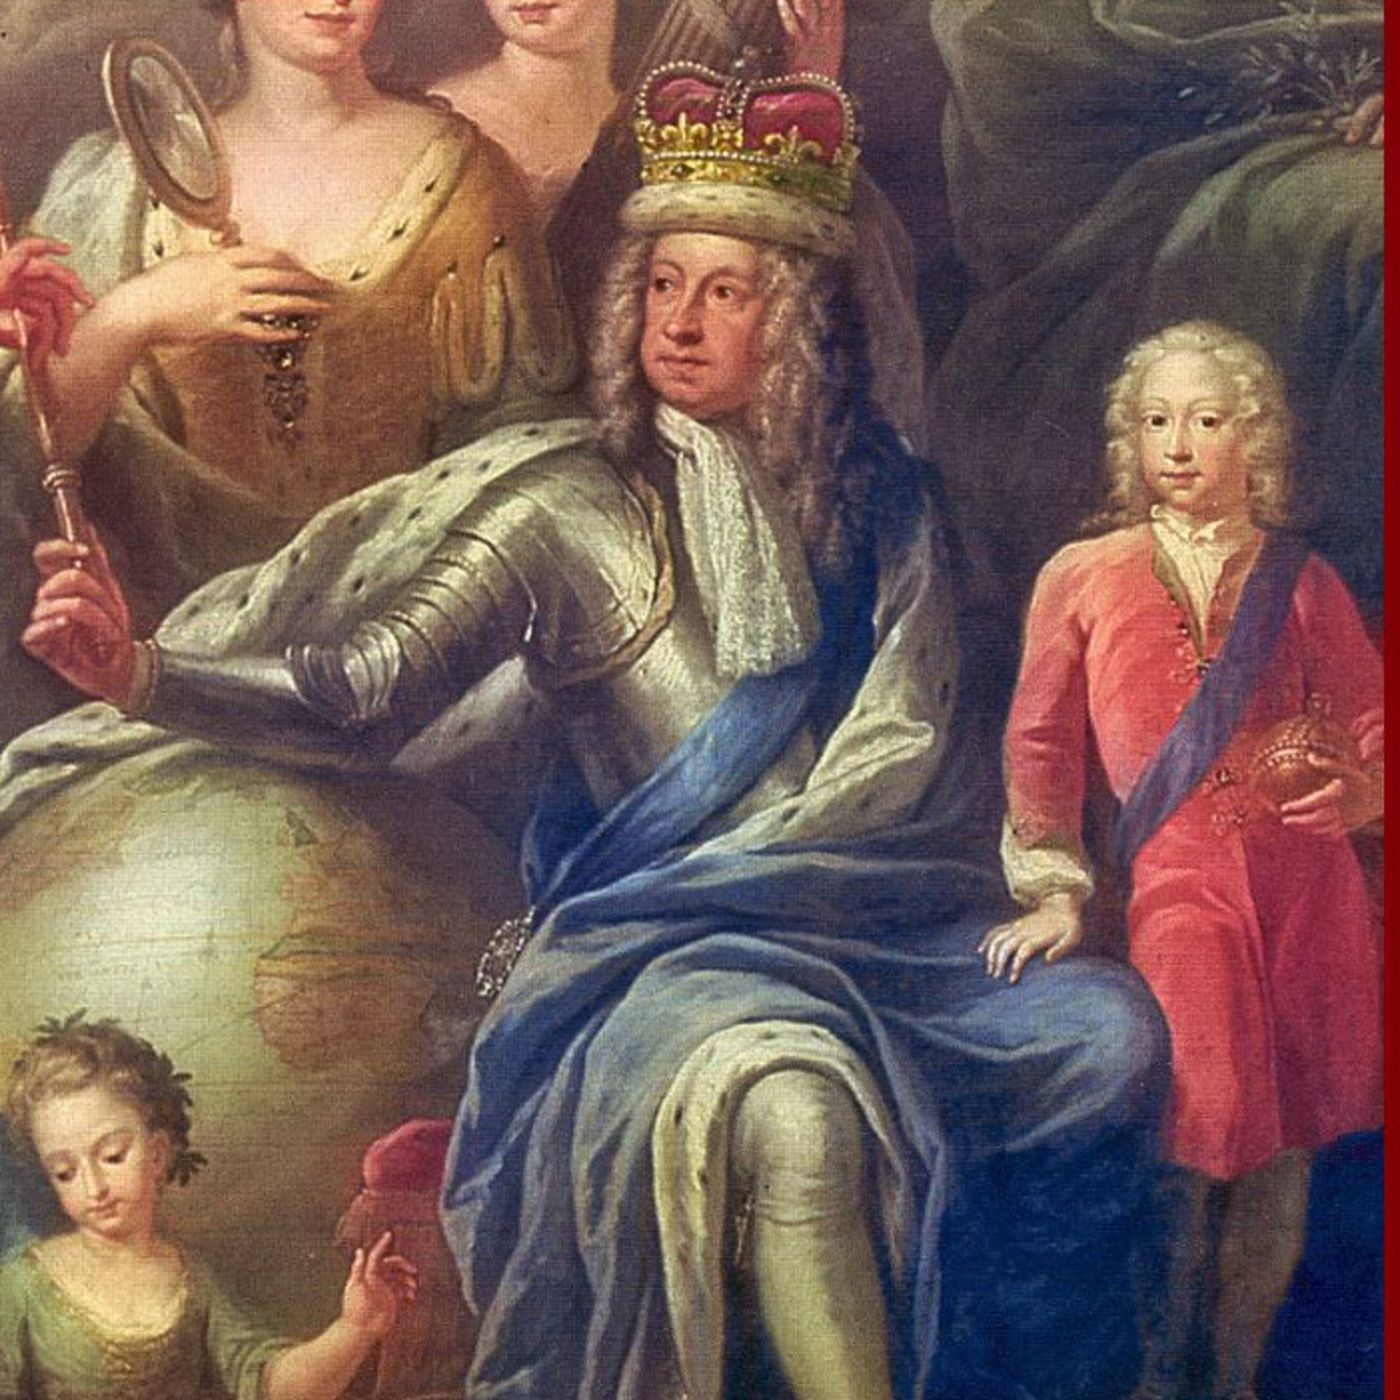 The Hanoverian Dynasty